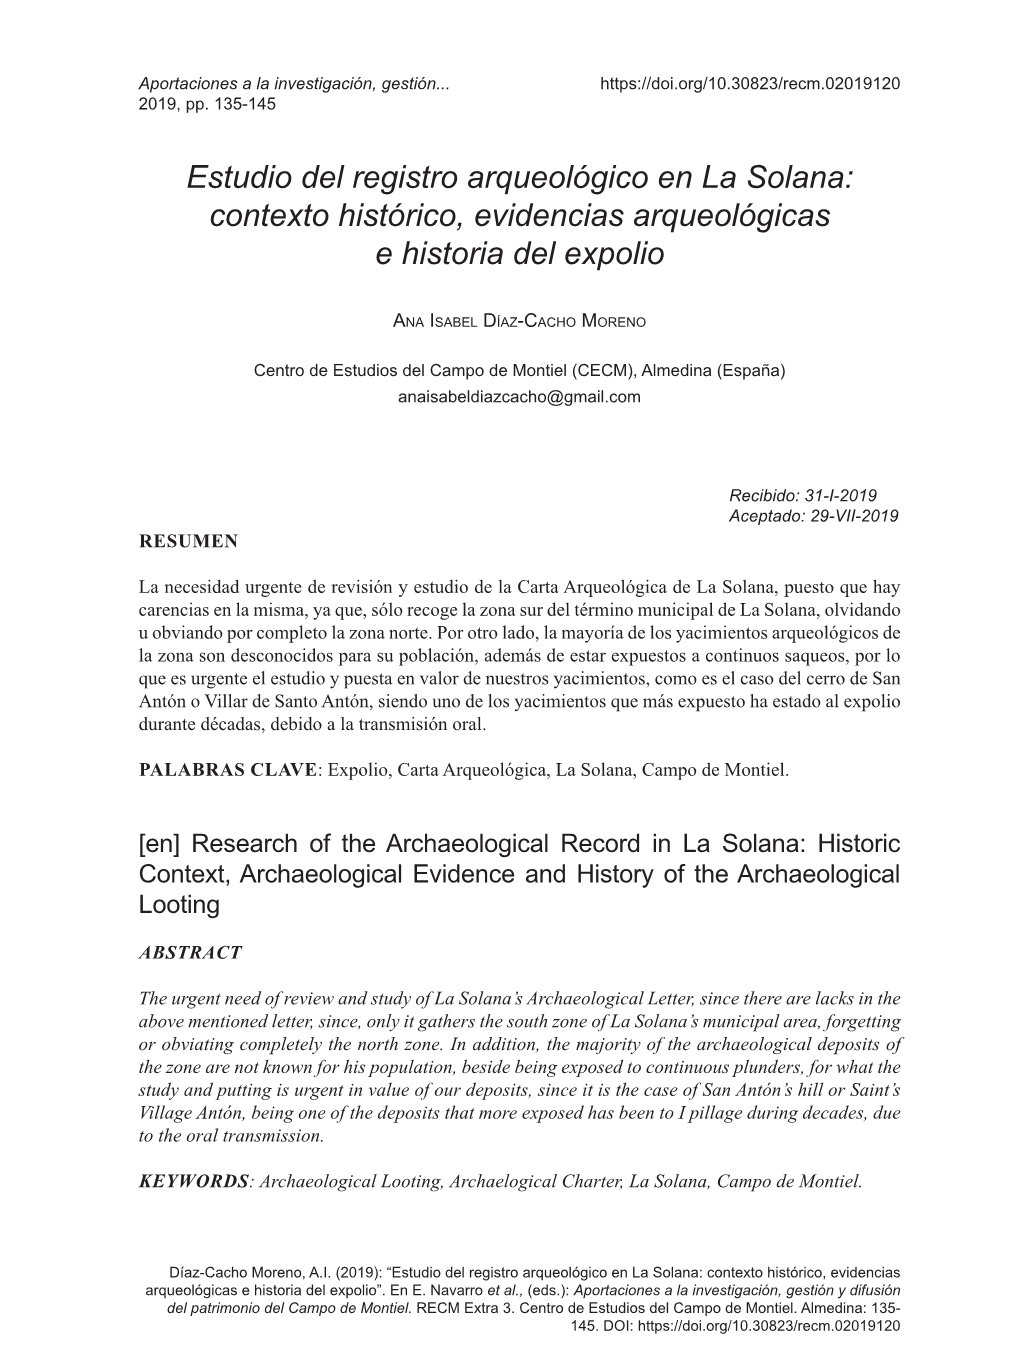 Estudio Del Registro Arqueológico En La Solana: Contexto Histórico, Evidencias Arqueológicas E Historia Del Expolio